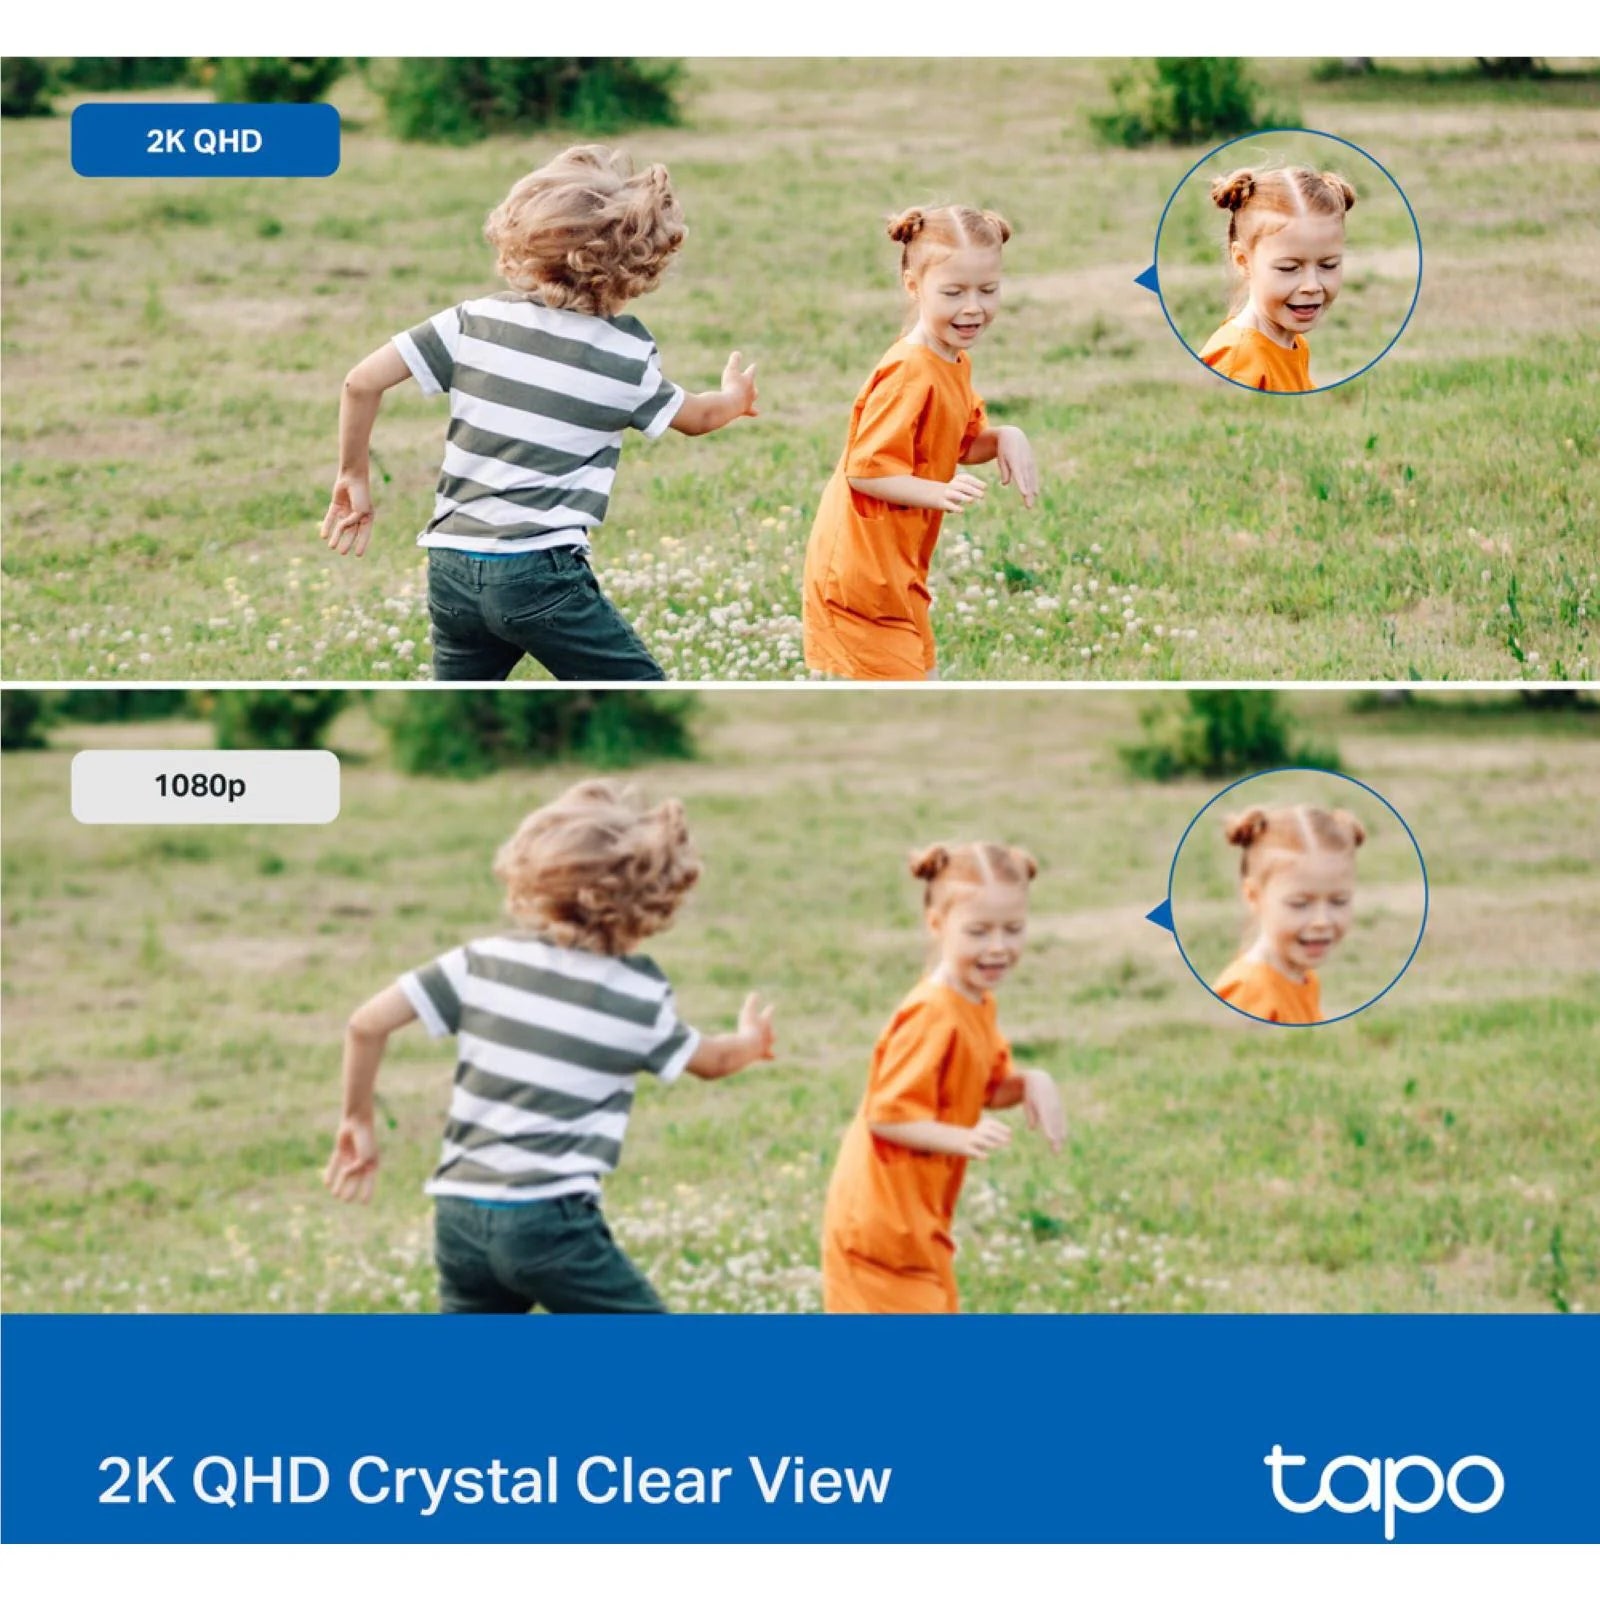 TP-Link Tapo 2K Outdoor Pan/Tilt Security Wi-Fi Camera